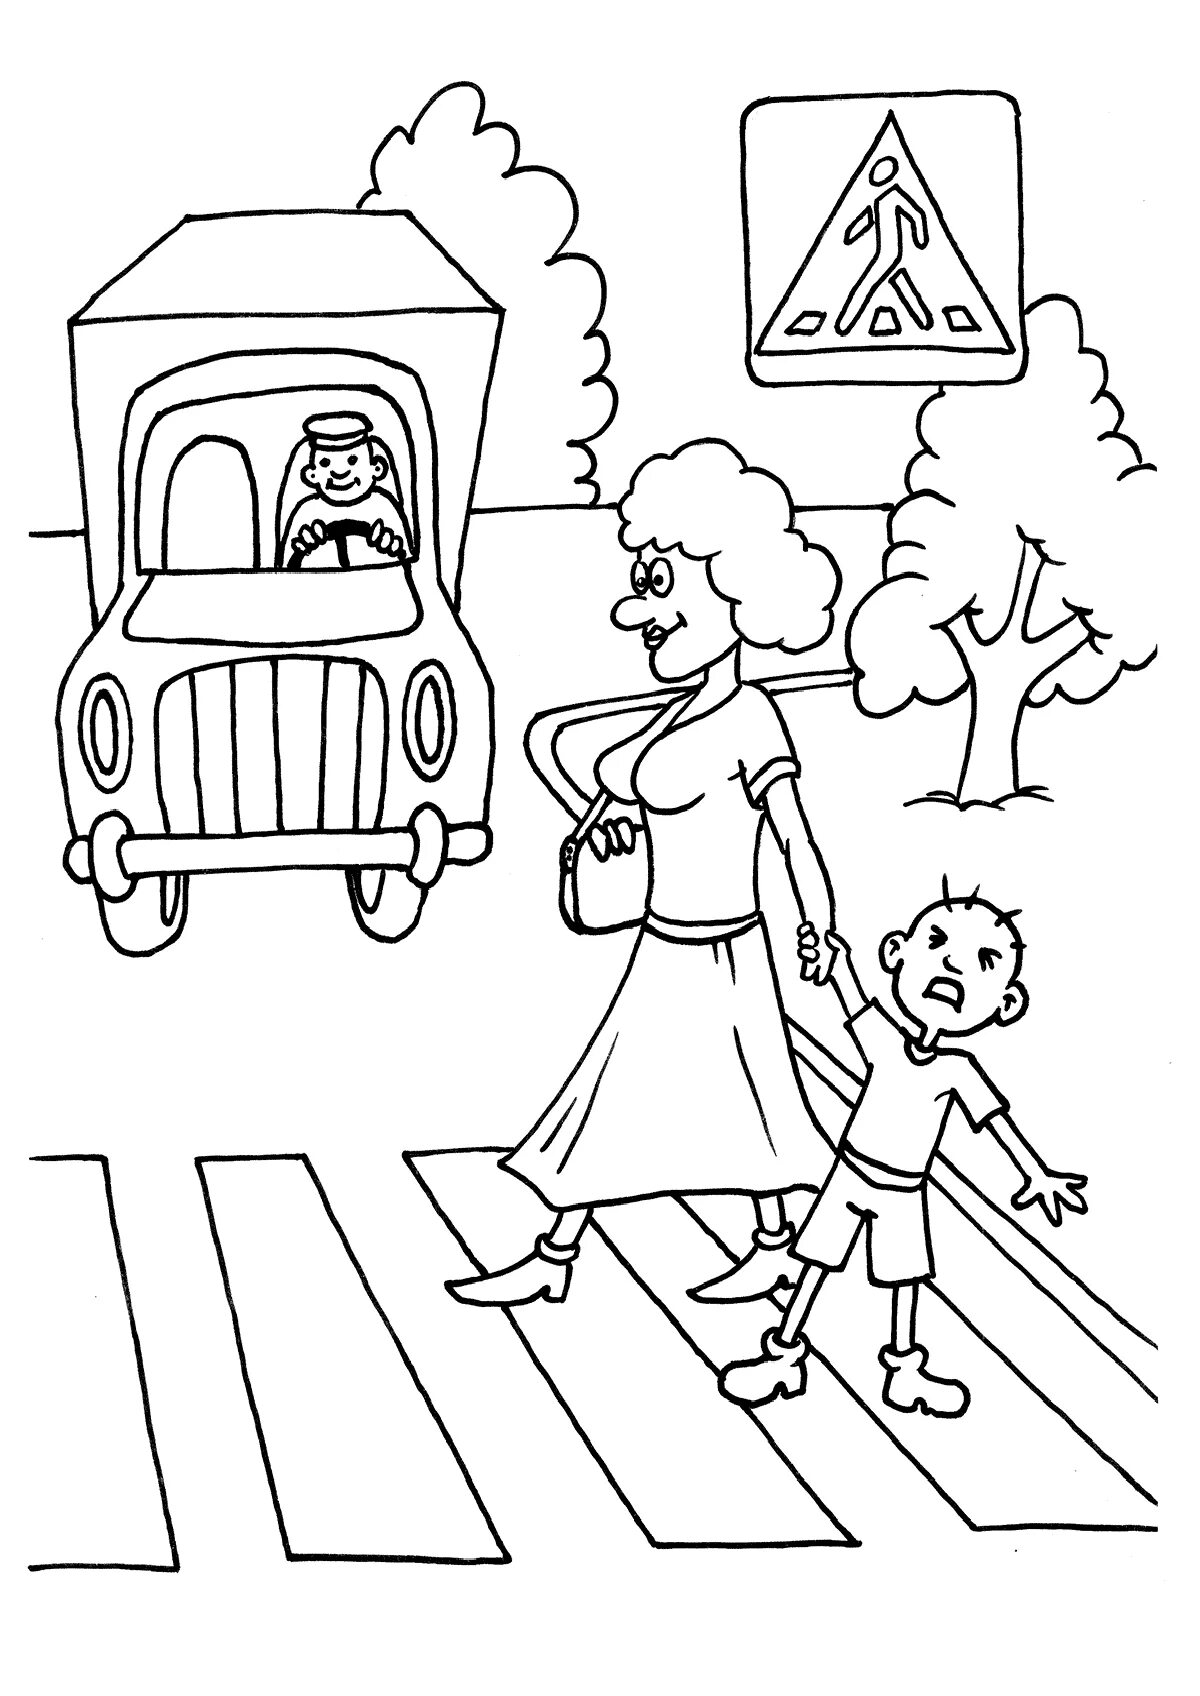 Child pedestrian #22